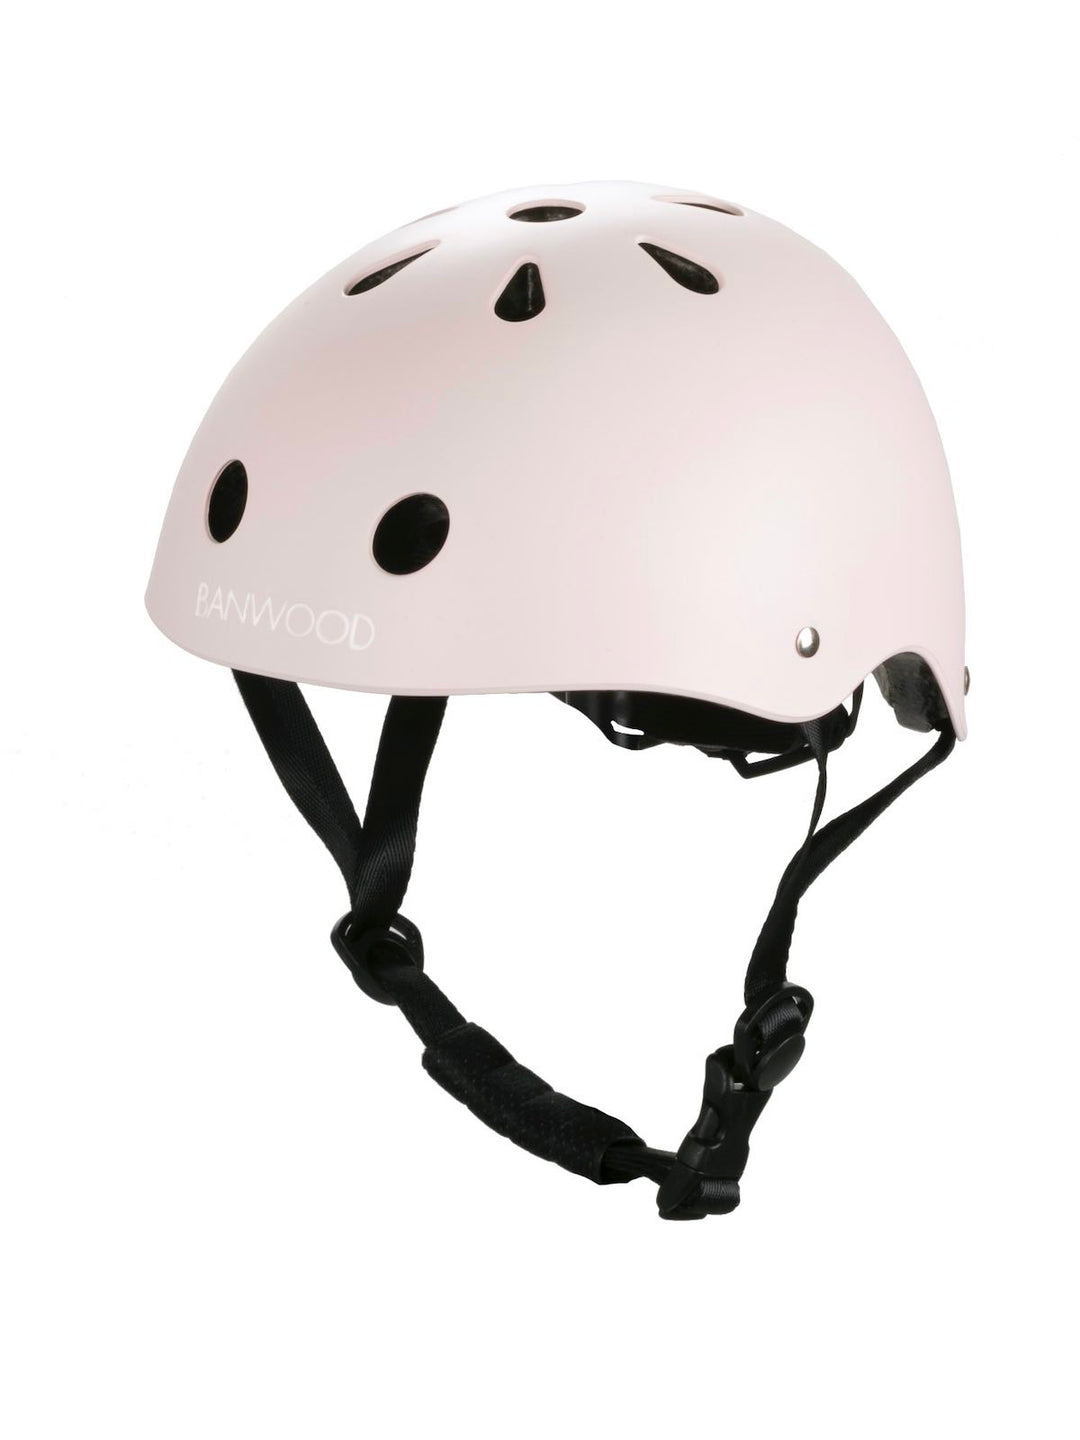 Banwood Classic Helmet in Pink